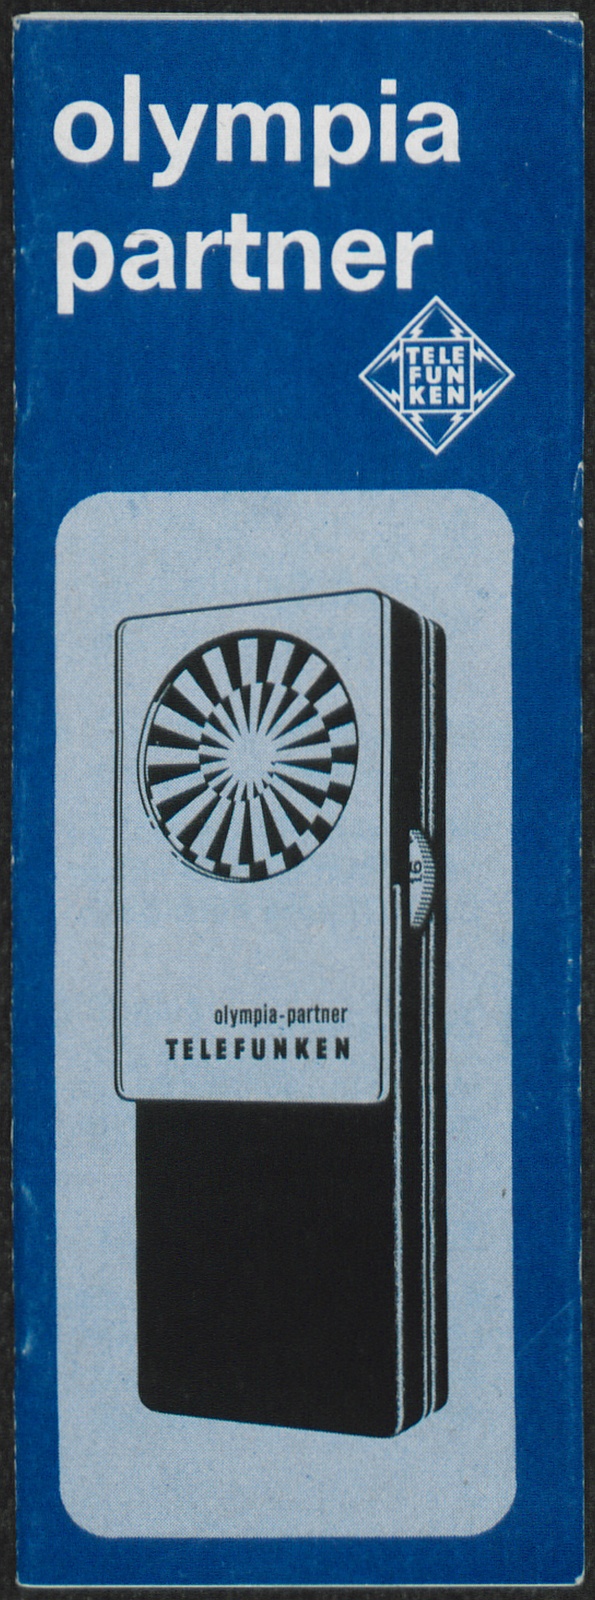 Bedienungsanleitung: Bedienungsanleitung Telefunken olympia partner (Stiftung Deutsches Technikmuseum Berlin CC0)